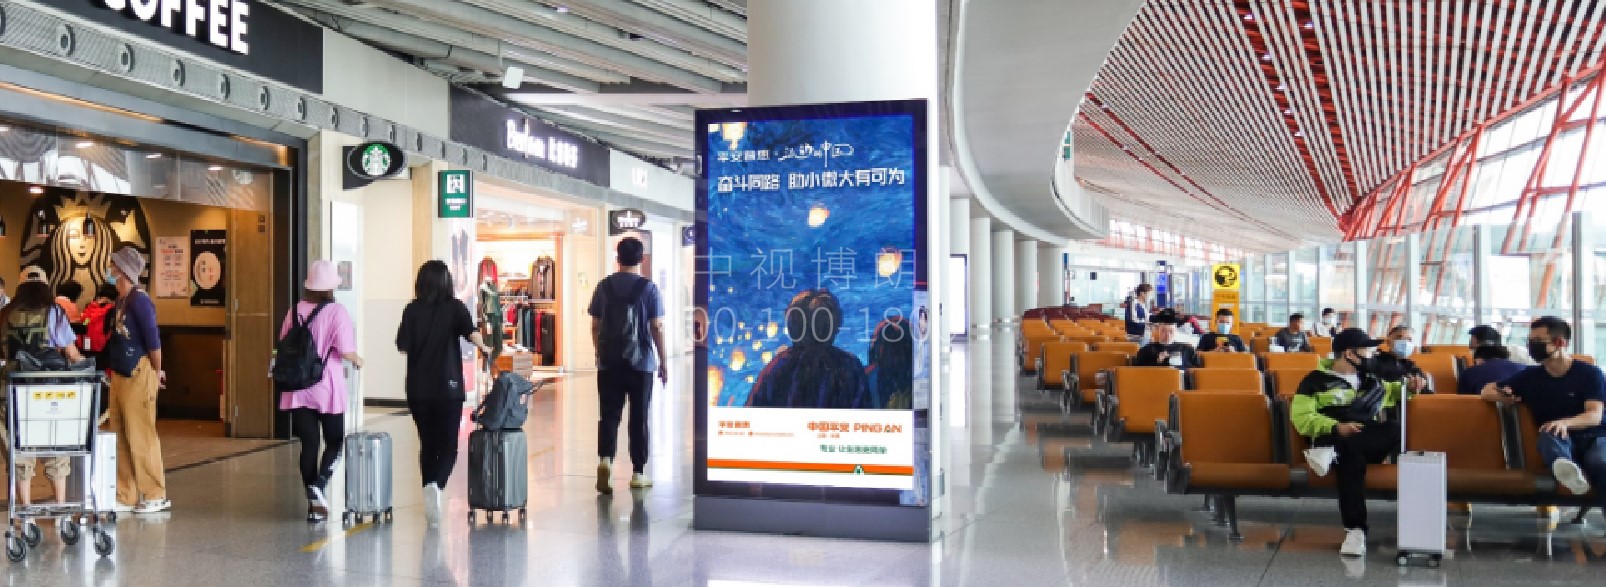 北京首都机场广告-T3C国内出发大厅滚动灯箱套装